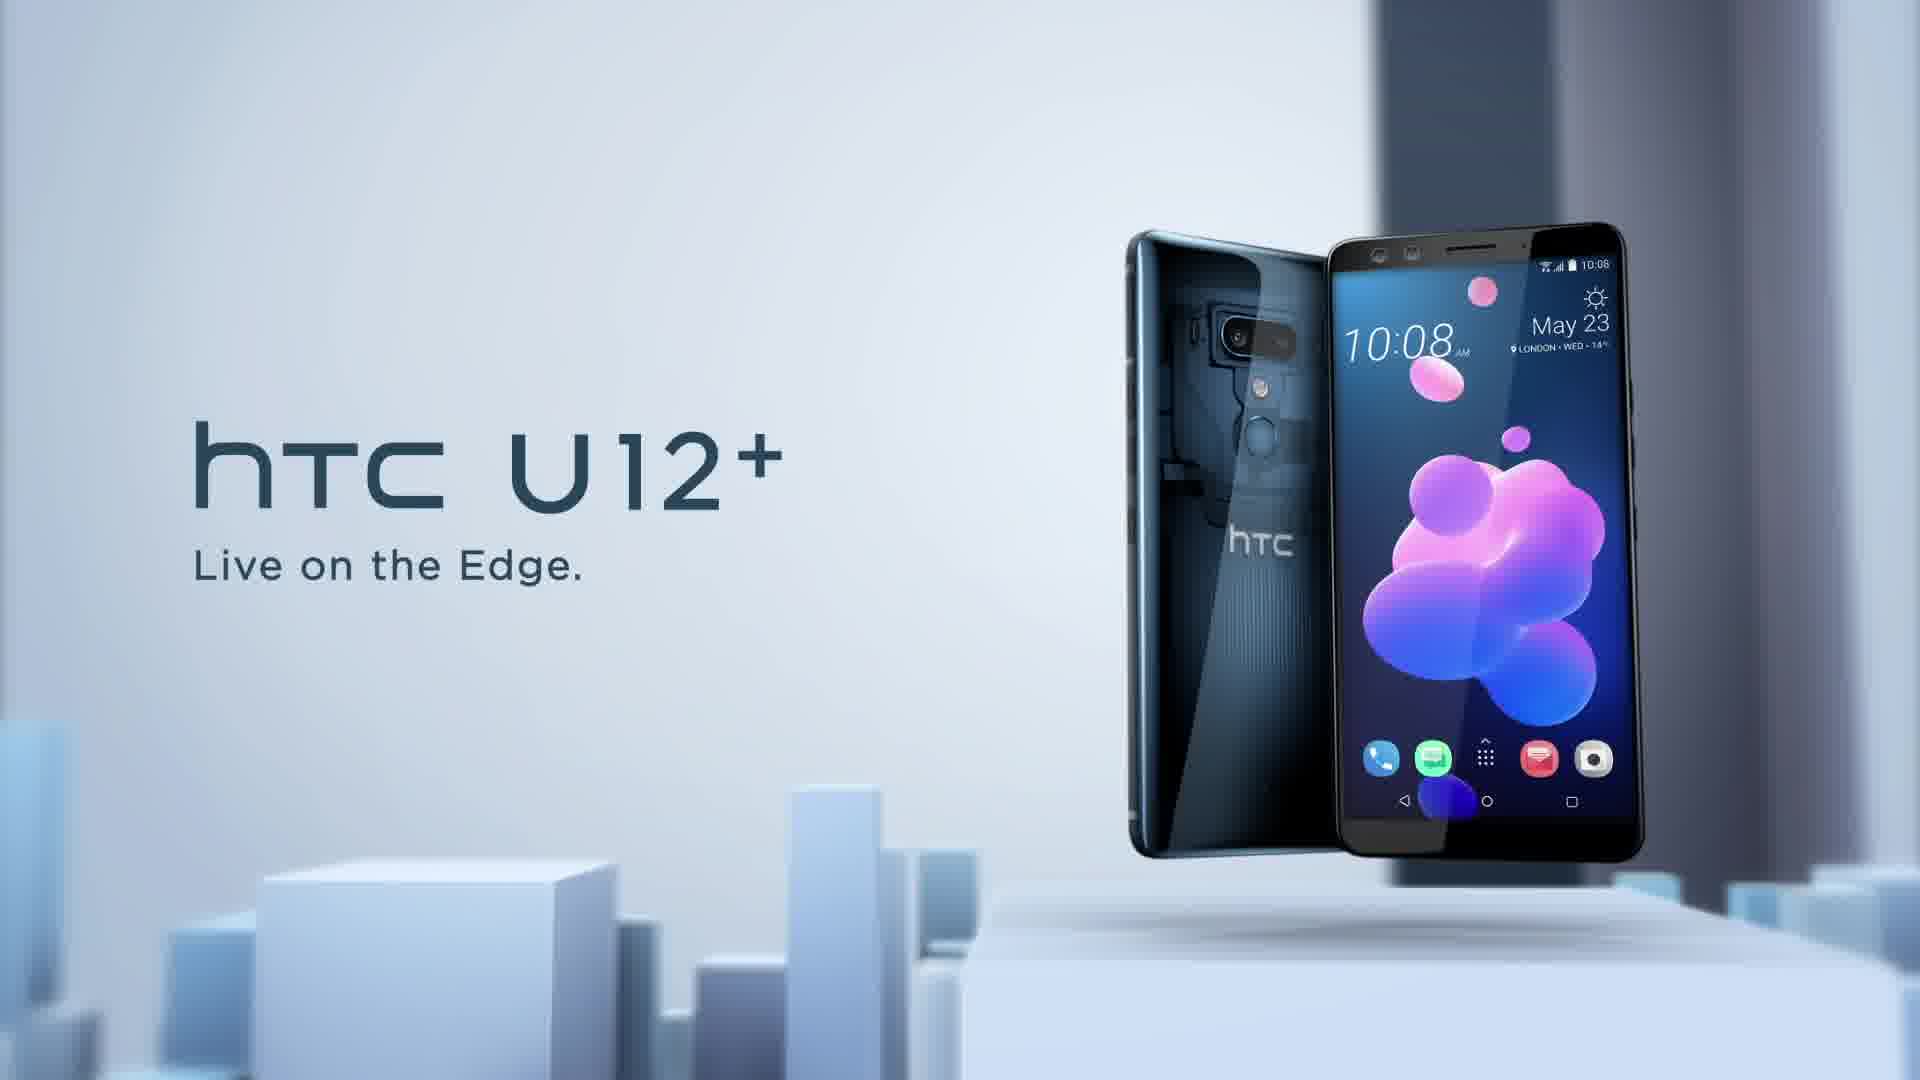 HTC U12+  Live on the Edge